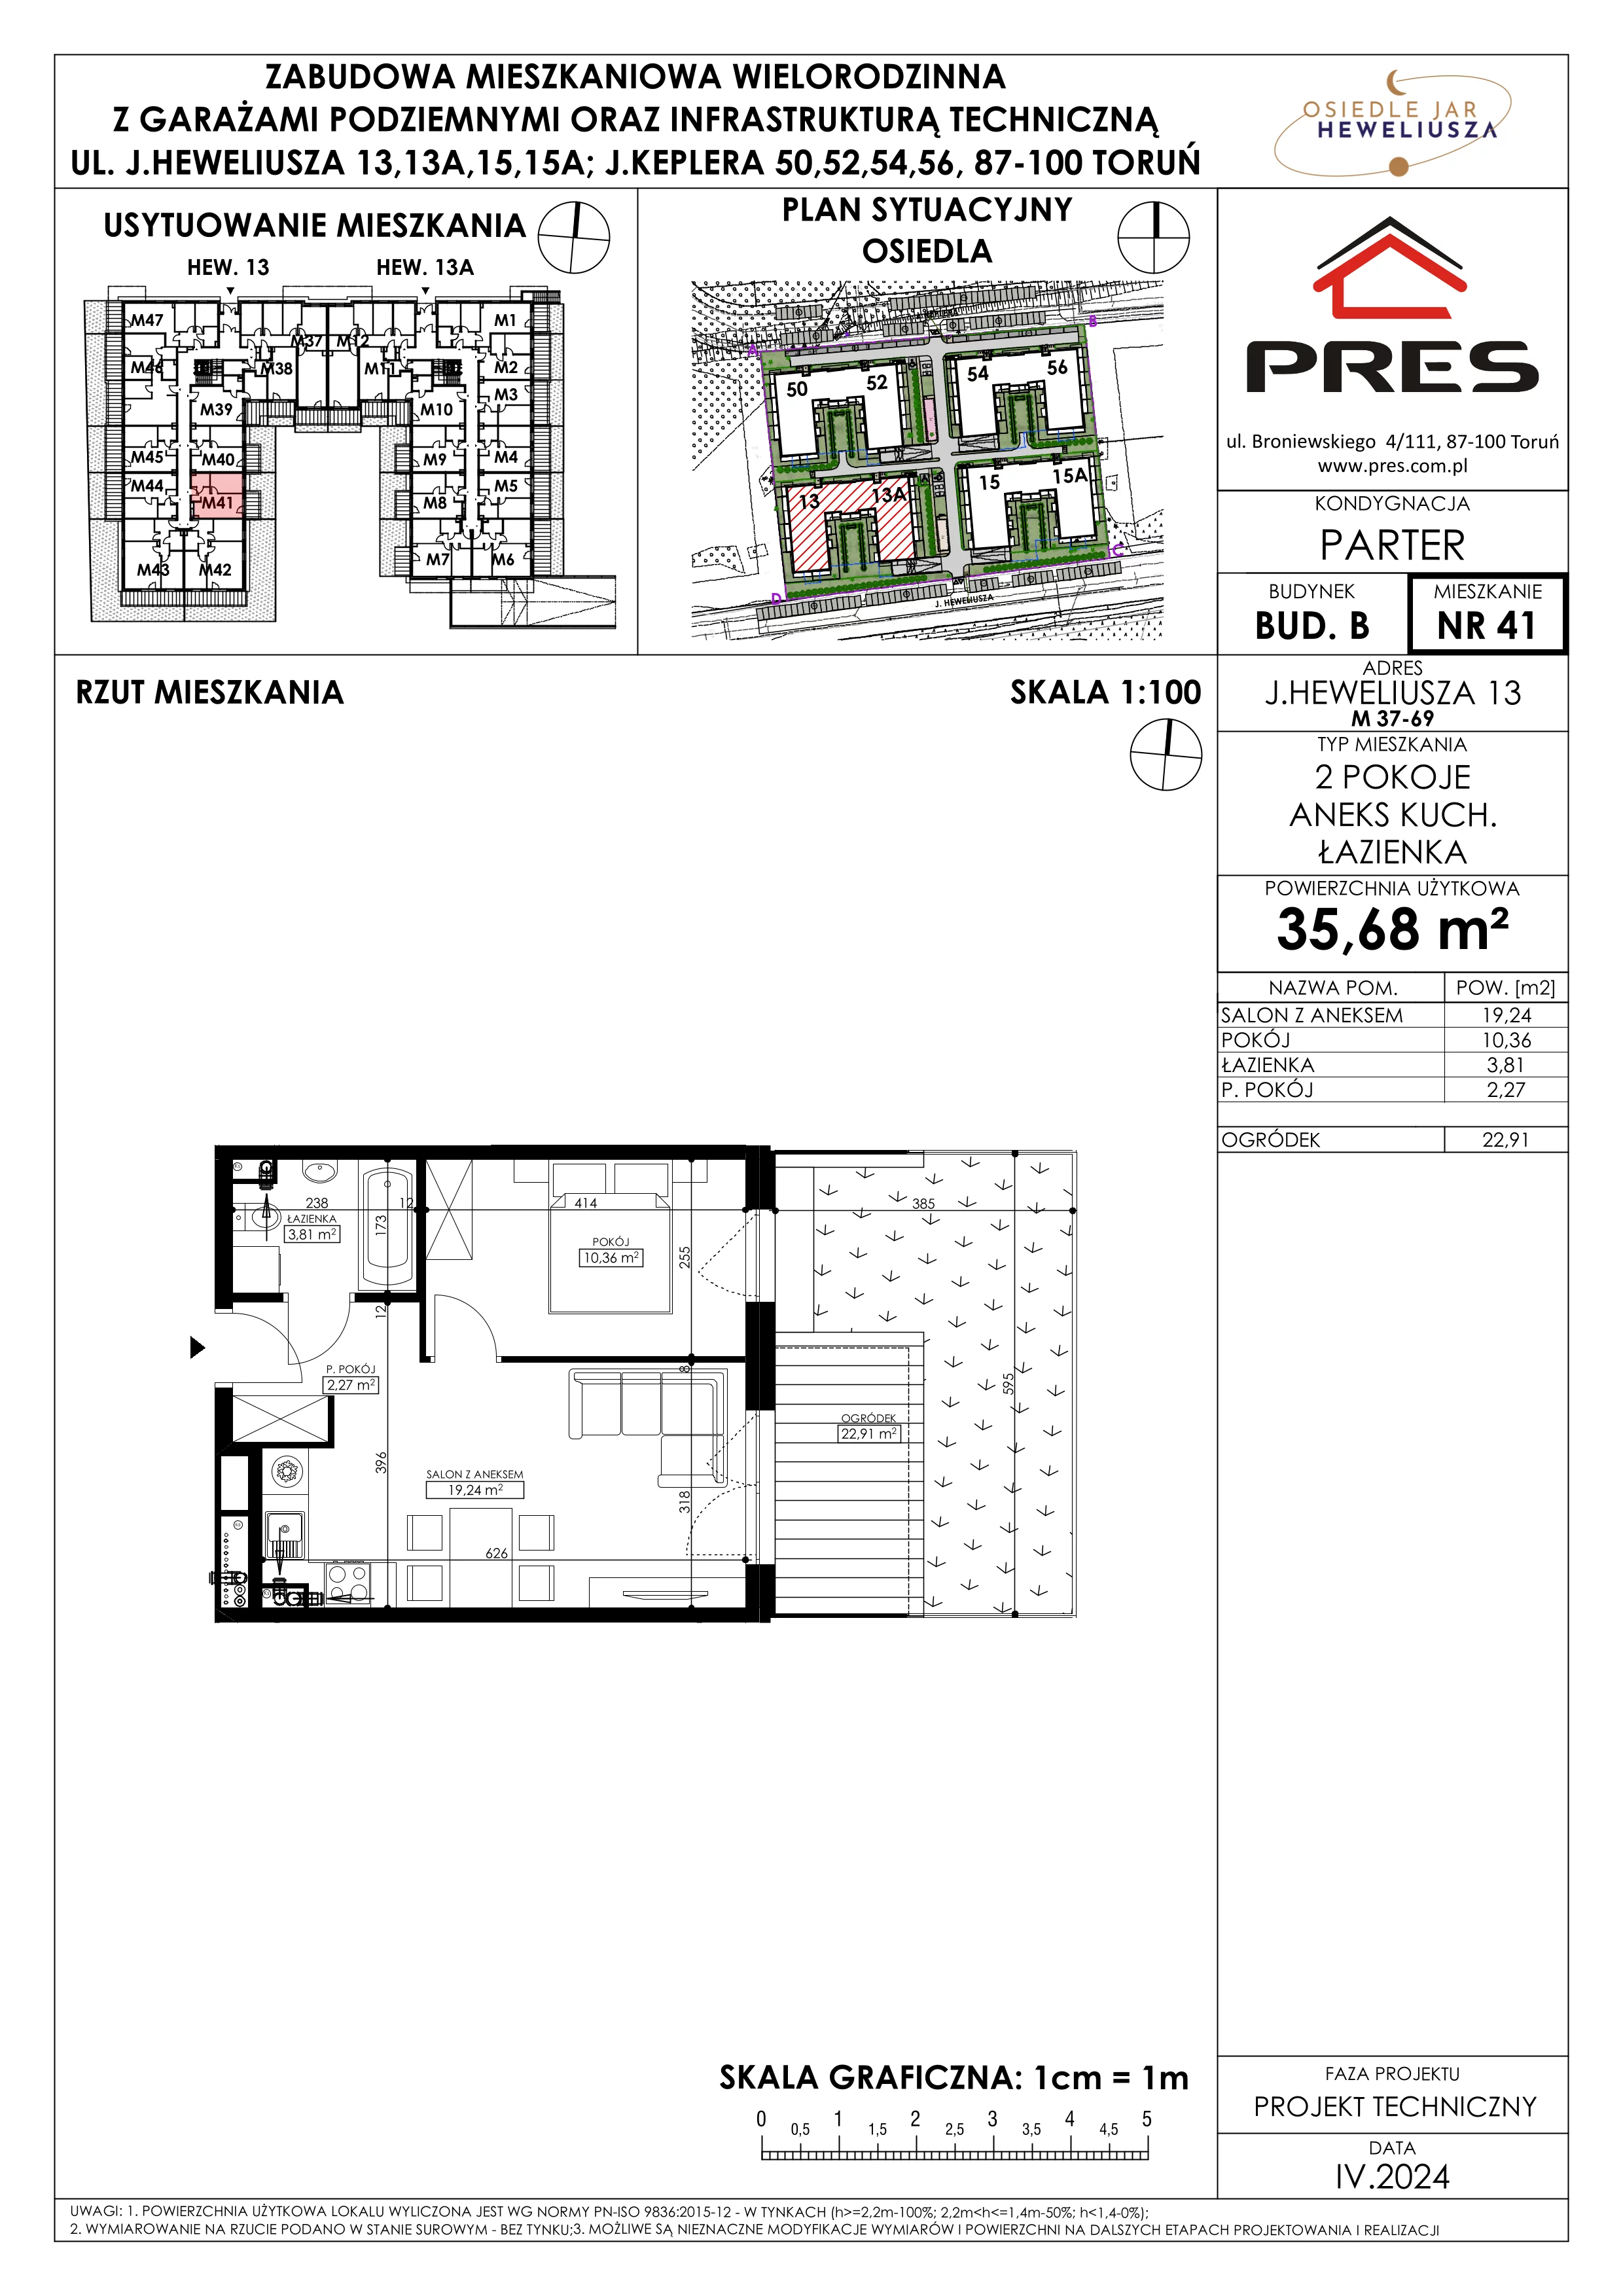 Mieszkanie 35,68 m², parter, oferta nr 41, Osiedle JAR Heweliusza - Etap II, Toruń, Wrzosy, JAR, ul. Heweliusza 13-15A